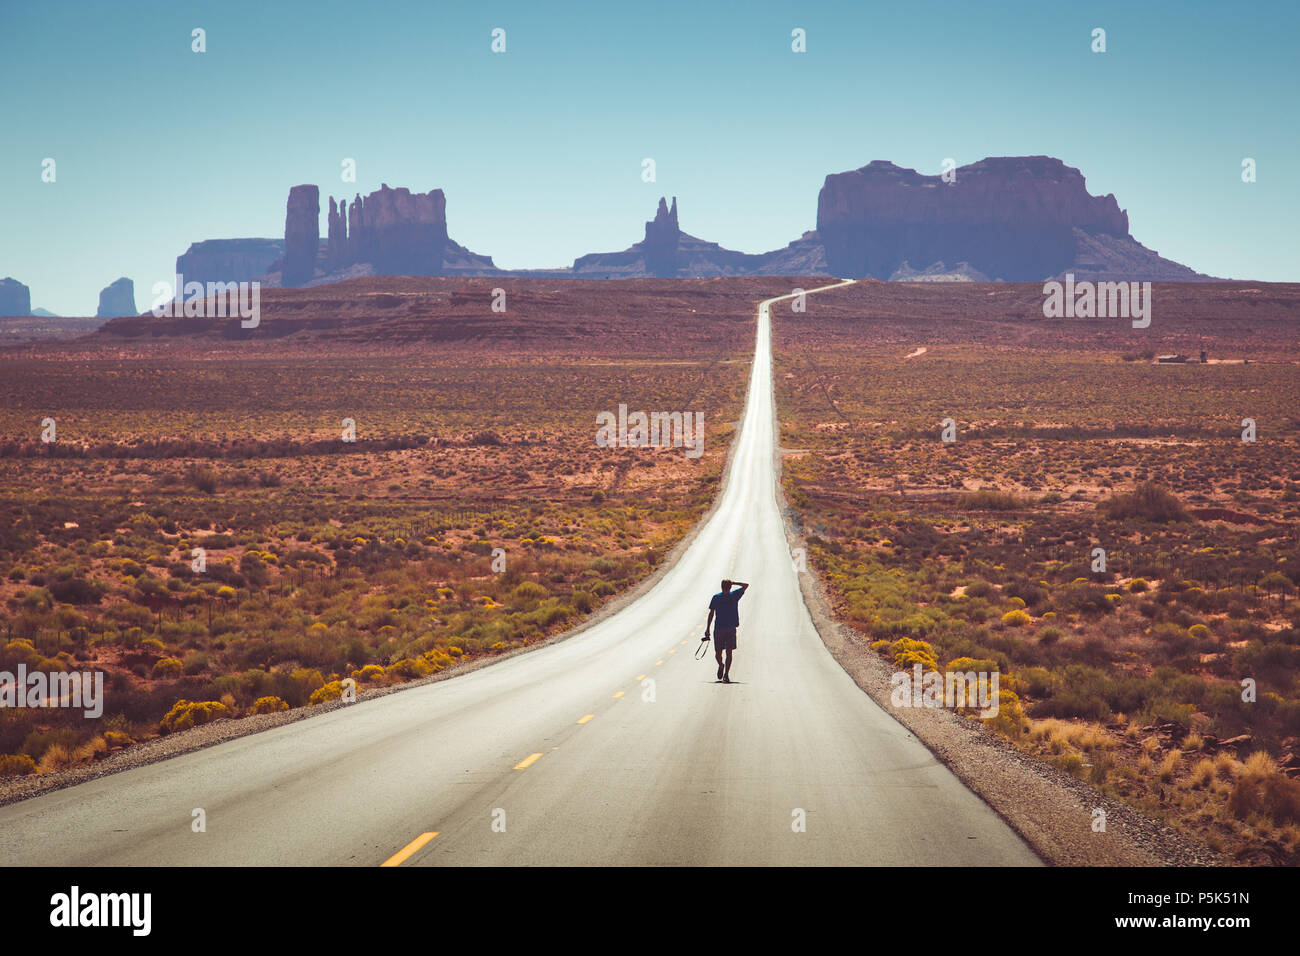 Vue panoramique classique d'une jeune personne marcher sur la célèbre route de Forrest Gump à midi à Monument Valley, Arizona, USA Banque D'Images